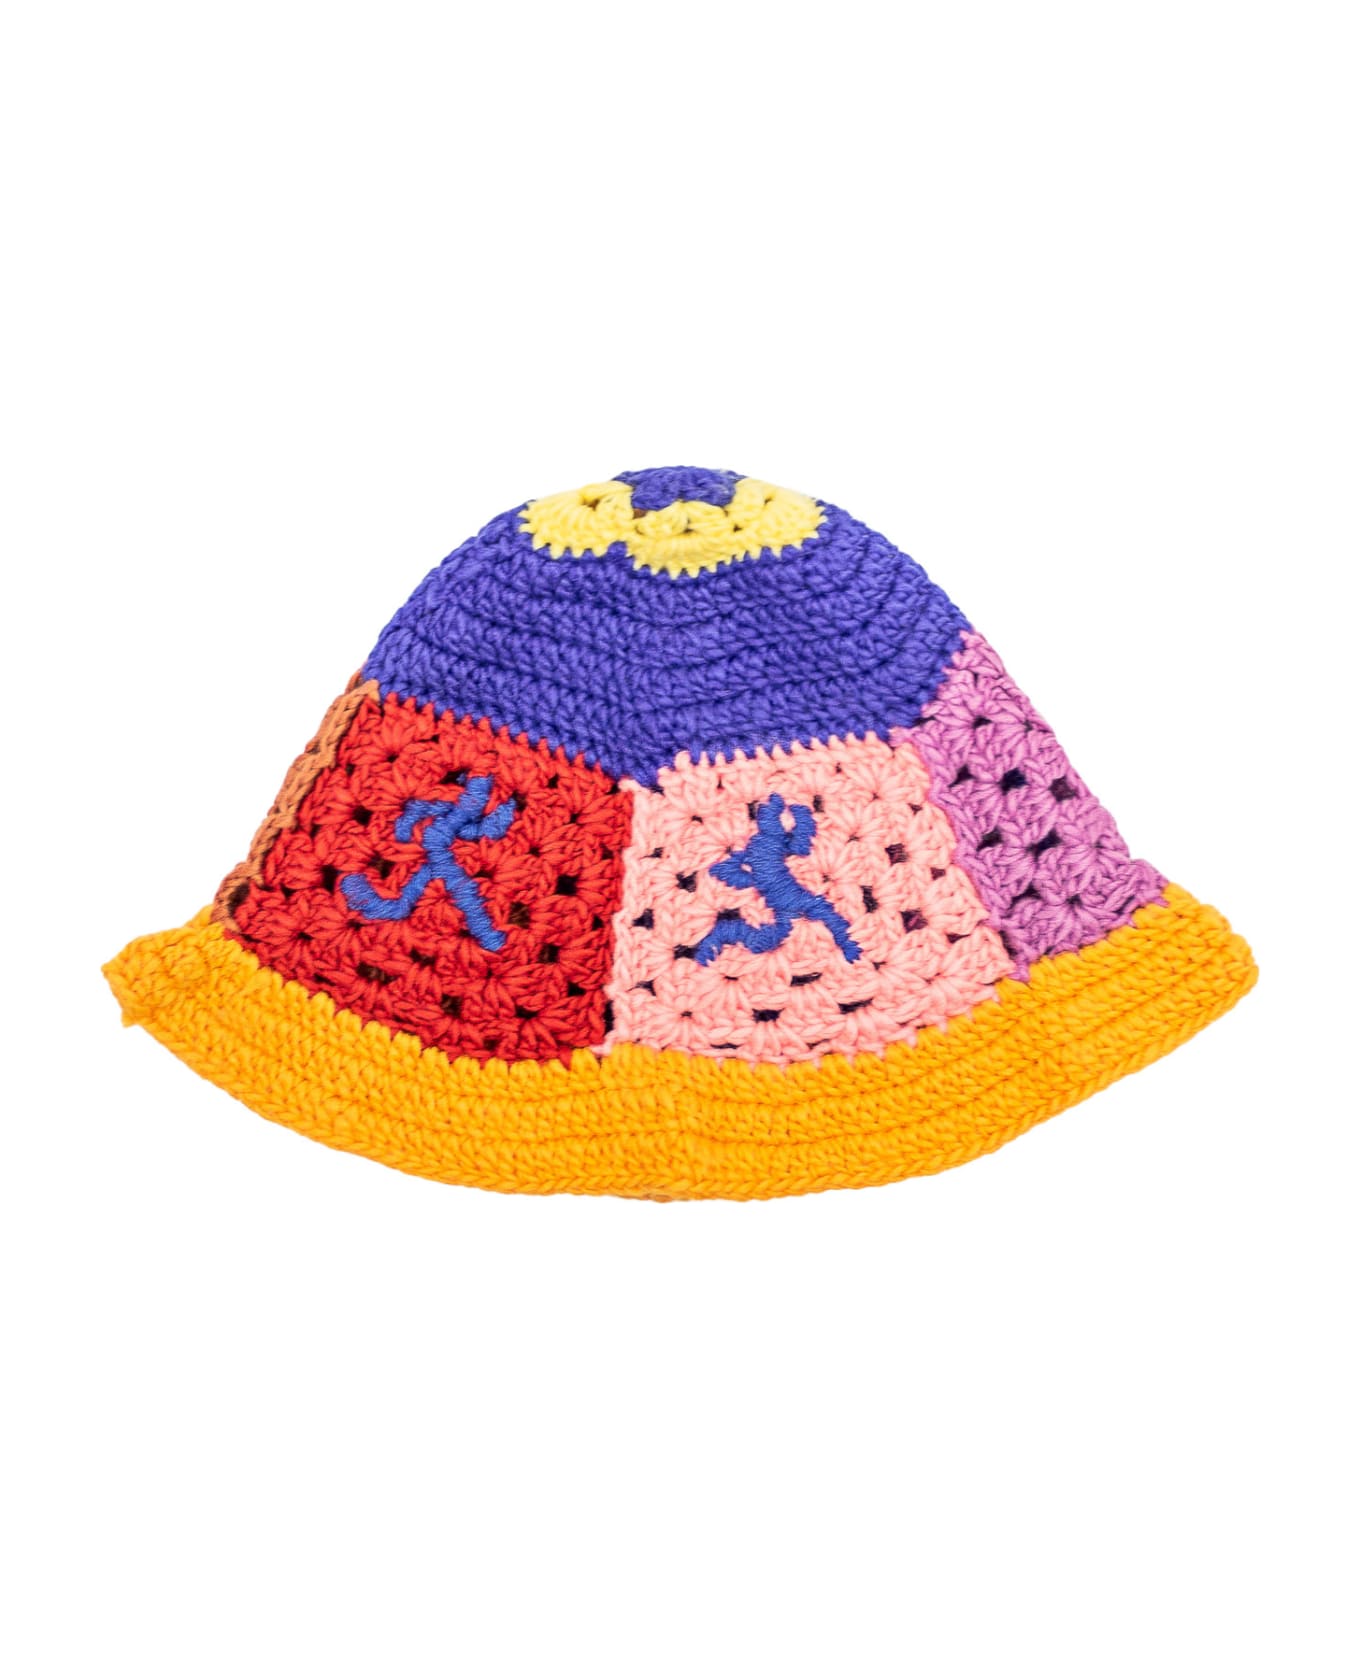 Kidsuper Crochet Hat - MULTI